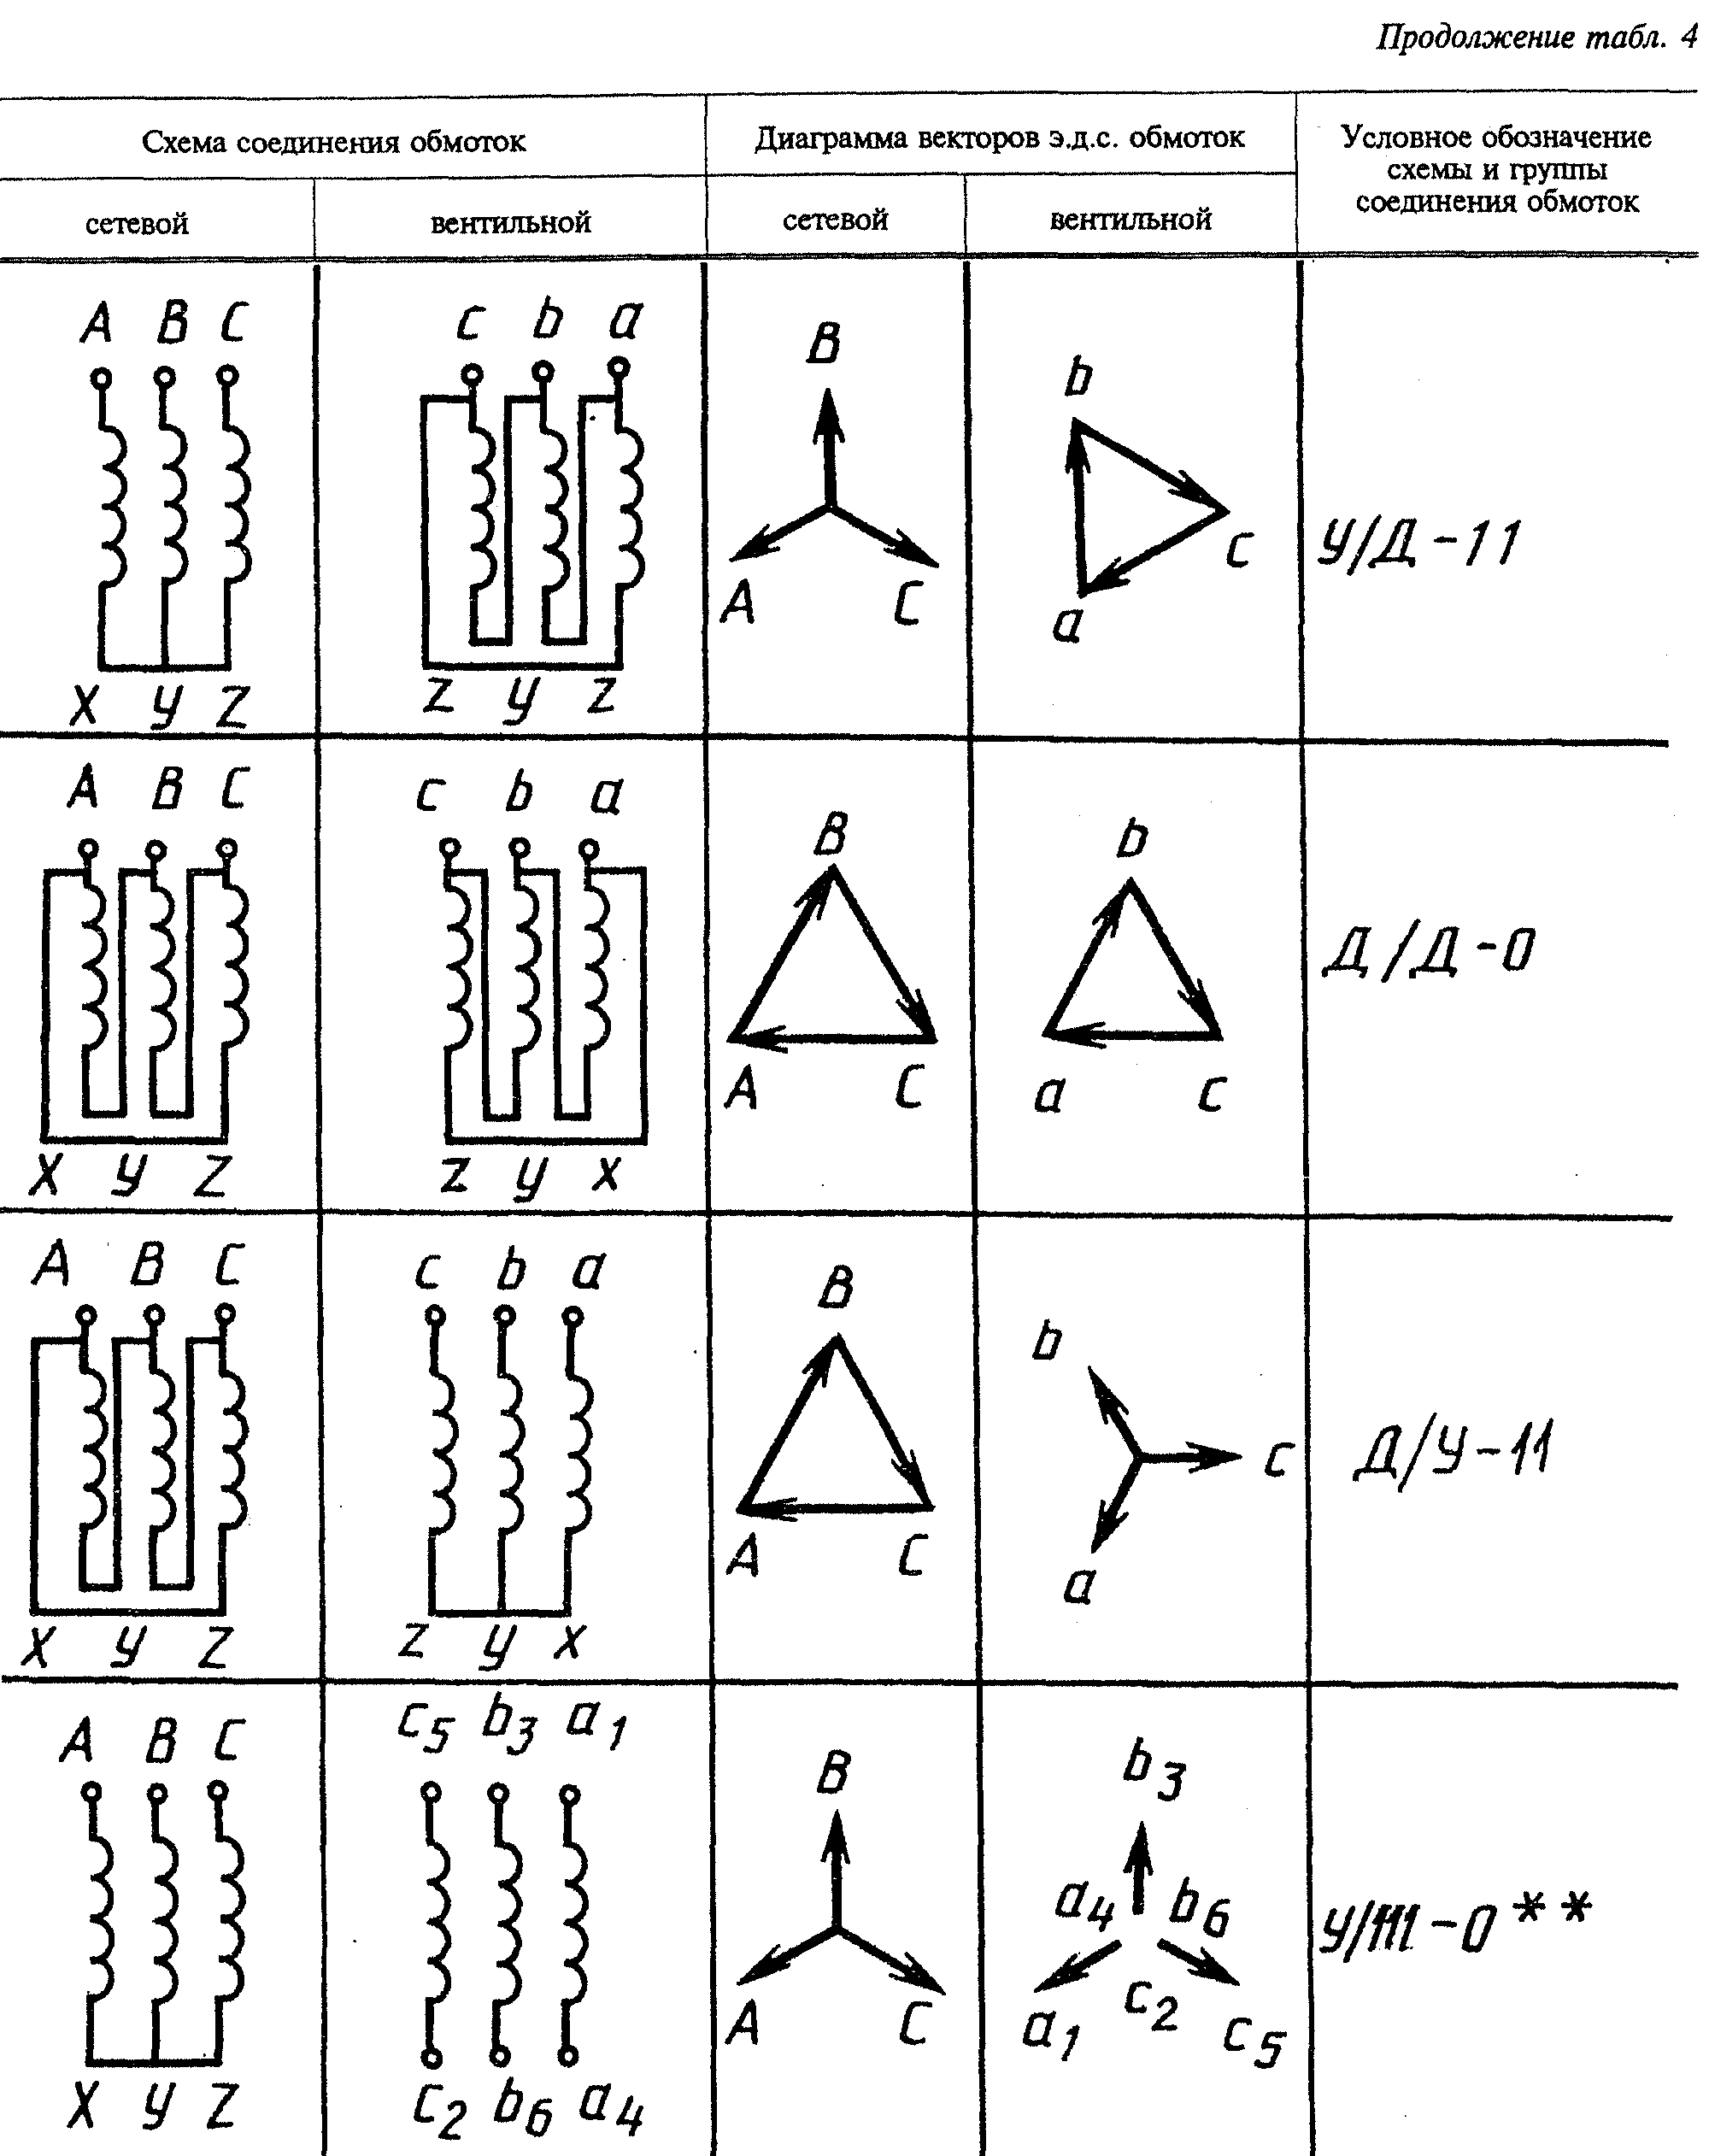 Схема и группа соединения обмоток трансформатора. Группа соединений обмоток трансформатора 35/0,4. 2пбв соединение обмоток. Условное обозначение схемы и группы соединений обмоток. Условные обозначения обмоток трансформатора.